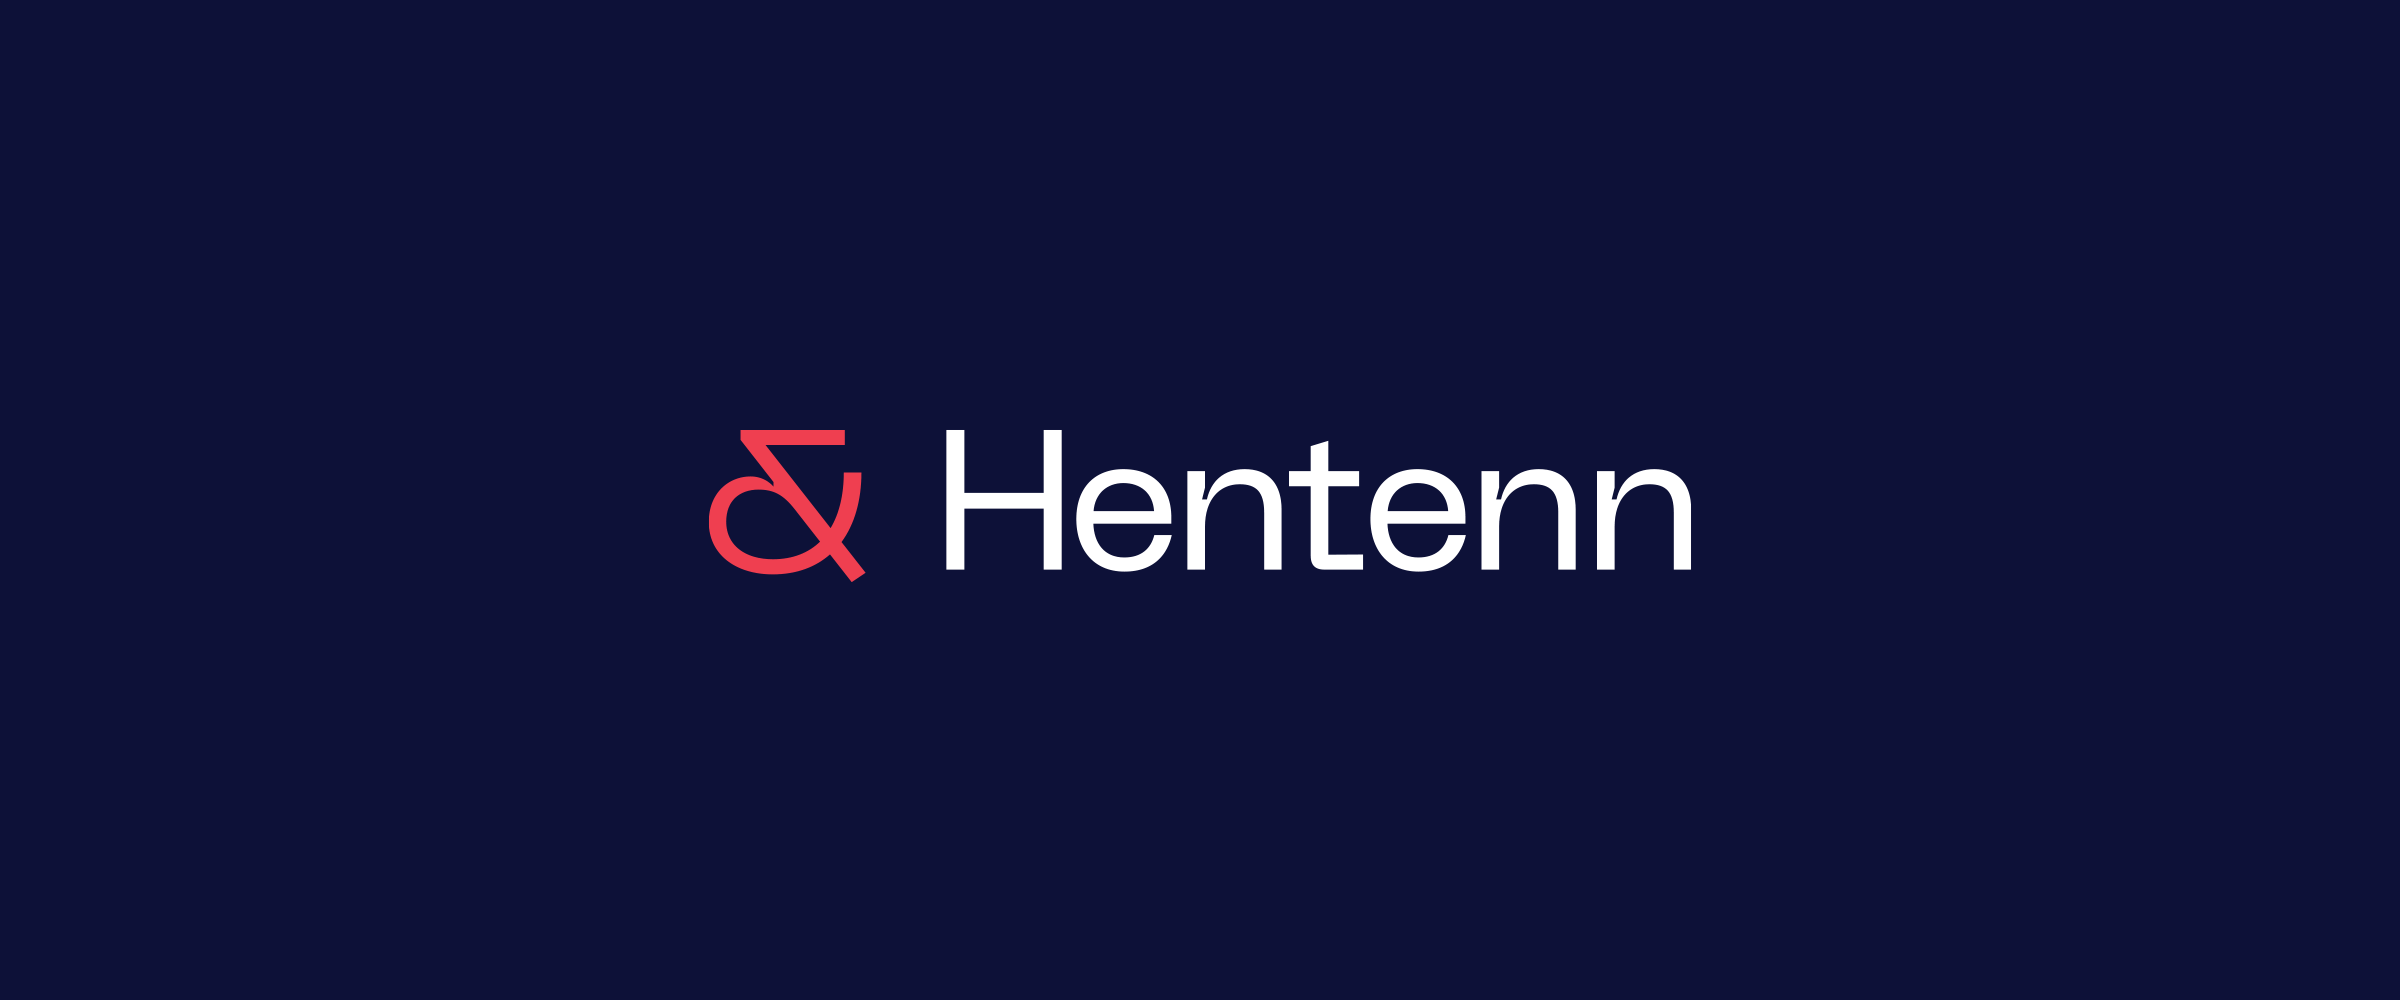 Logo Hentenn : méthode & engagement